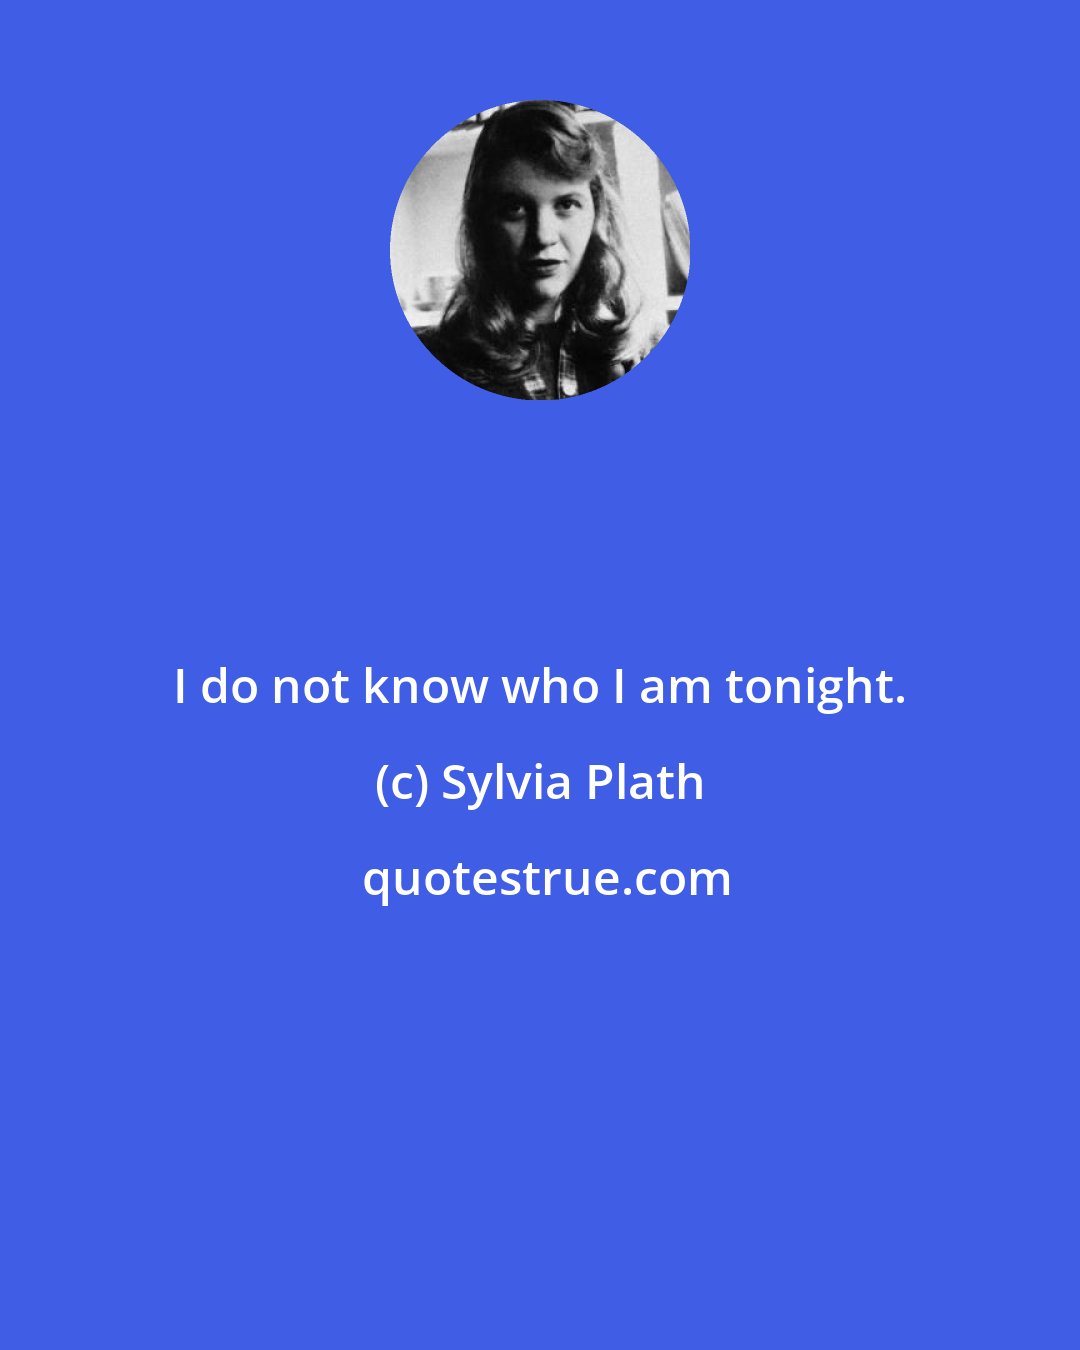 Sylvia Plath: I do not know who I am tonight.